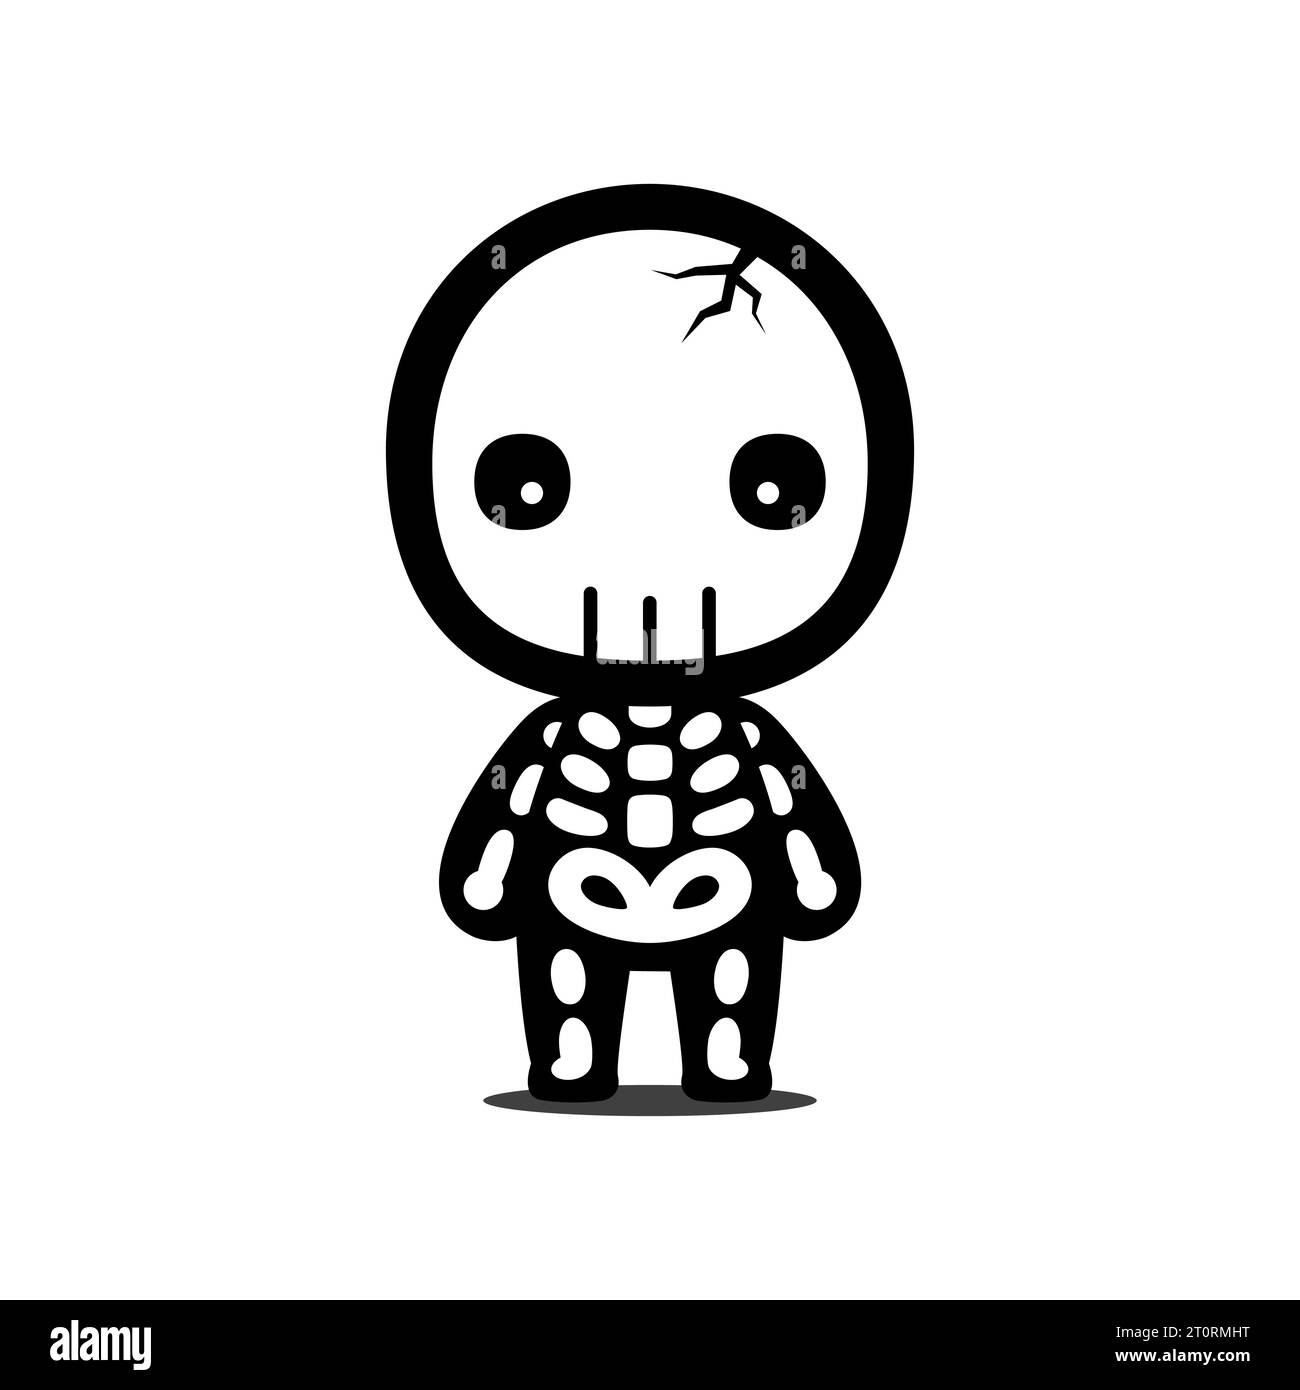 Cute And Kawaii Style Halloween Skull Cartoon Character Stock Vector